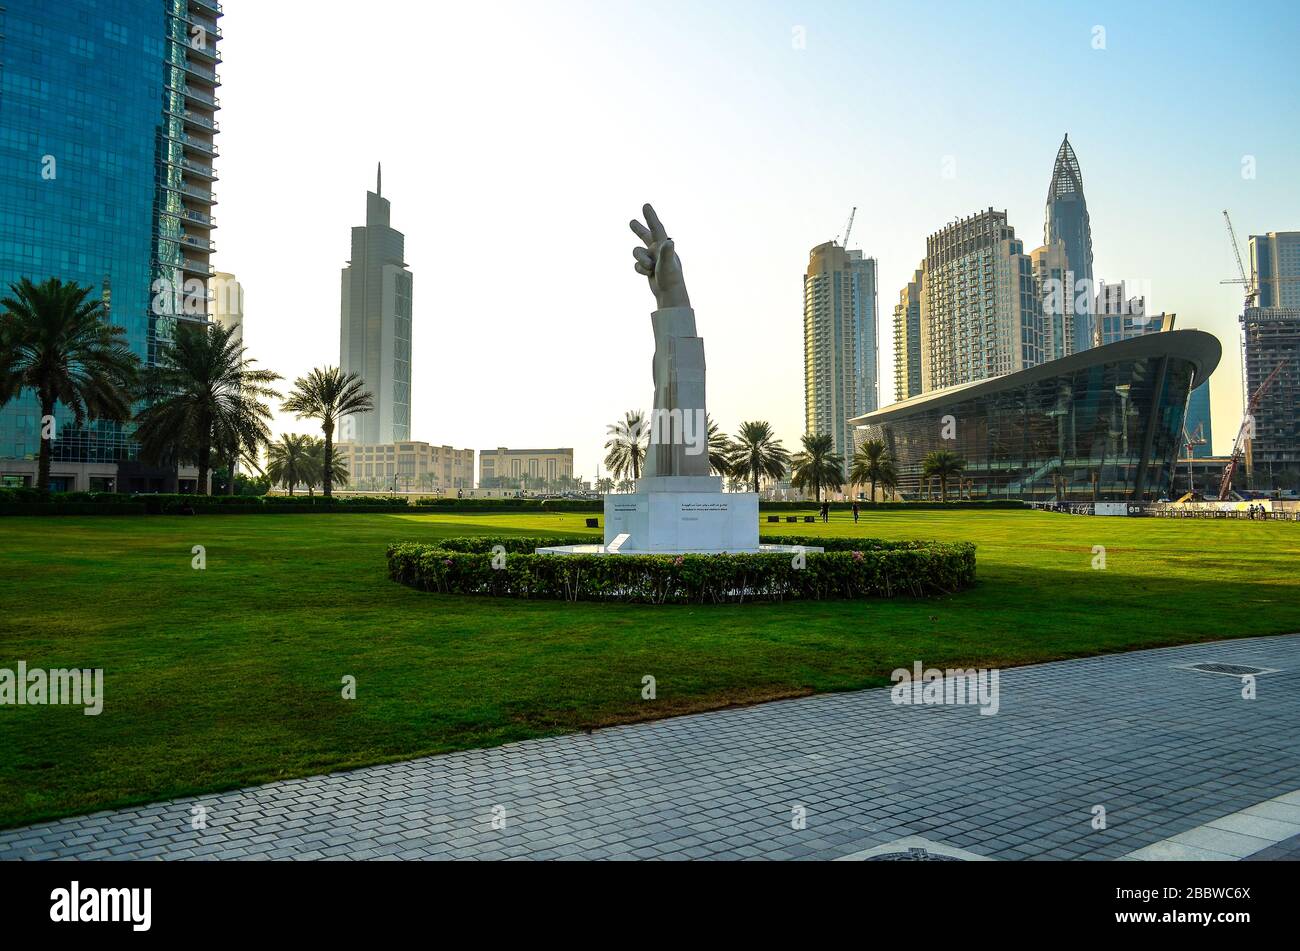 La sculpture Win, Victory, Love est située dans le parc Burj par Emaar, en face de l'Opéra de Dubaï, près du Burj Khalifa. Dubaï, Émirats arabes Unis Banque D'Images